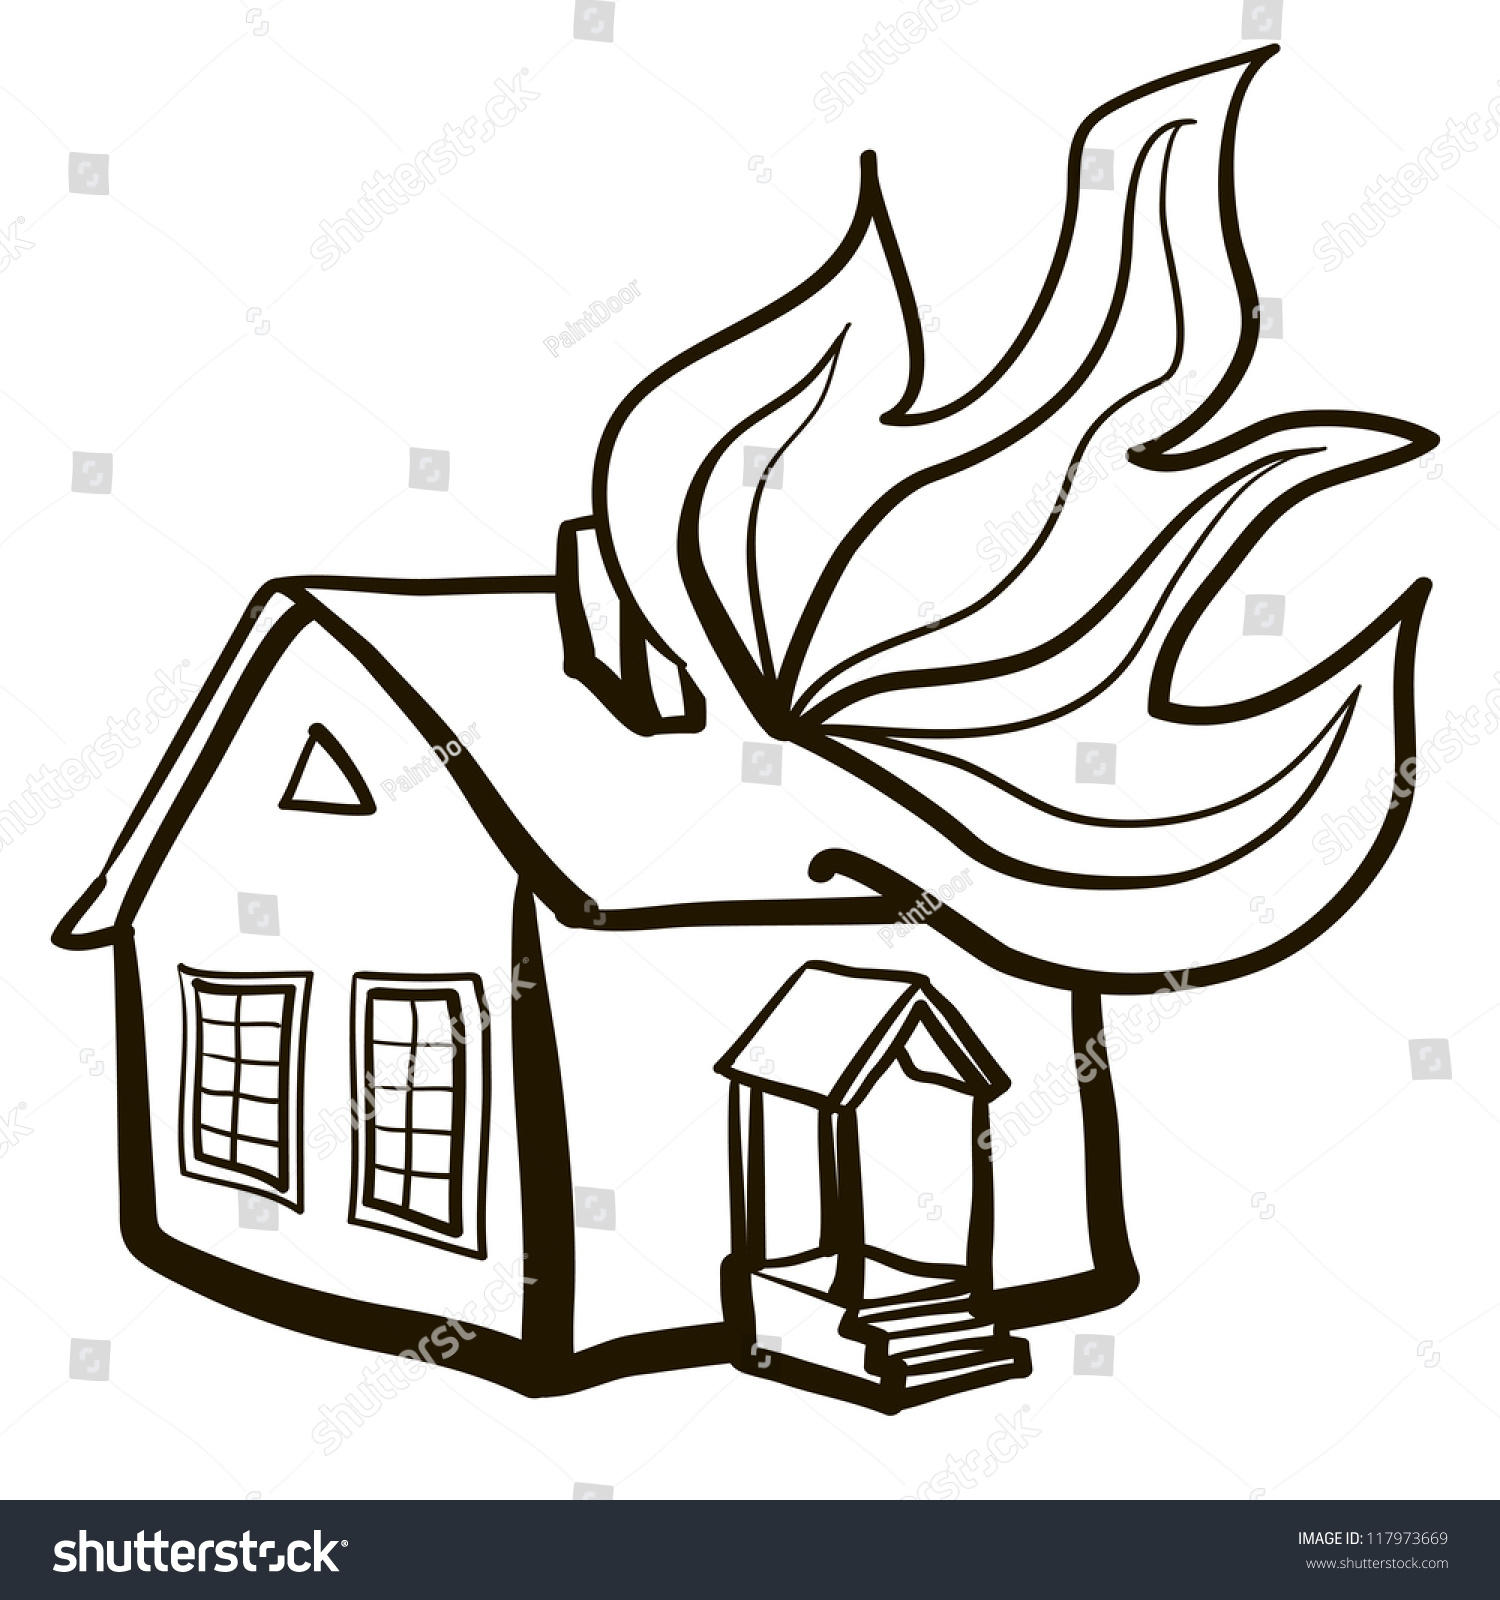 free clipart burning house - photo #8